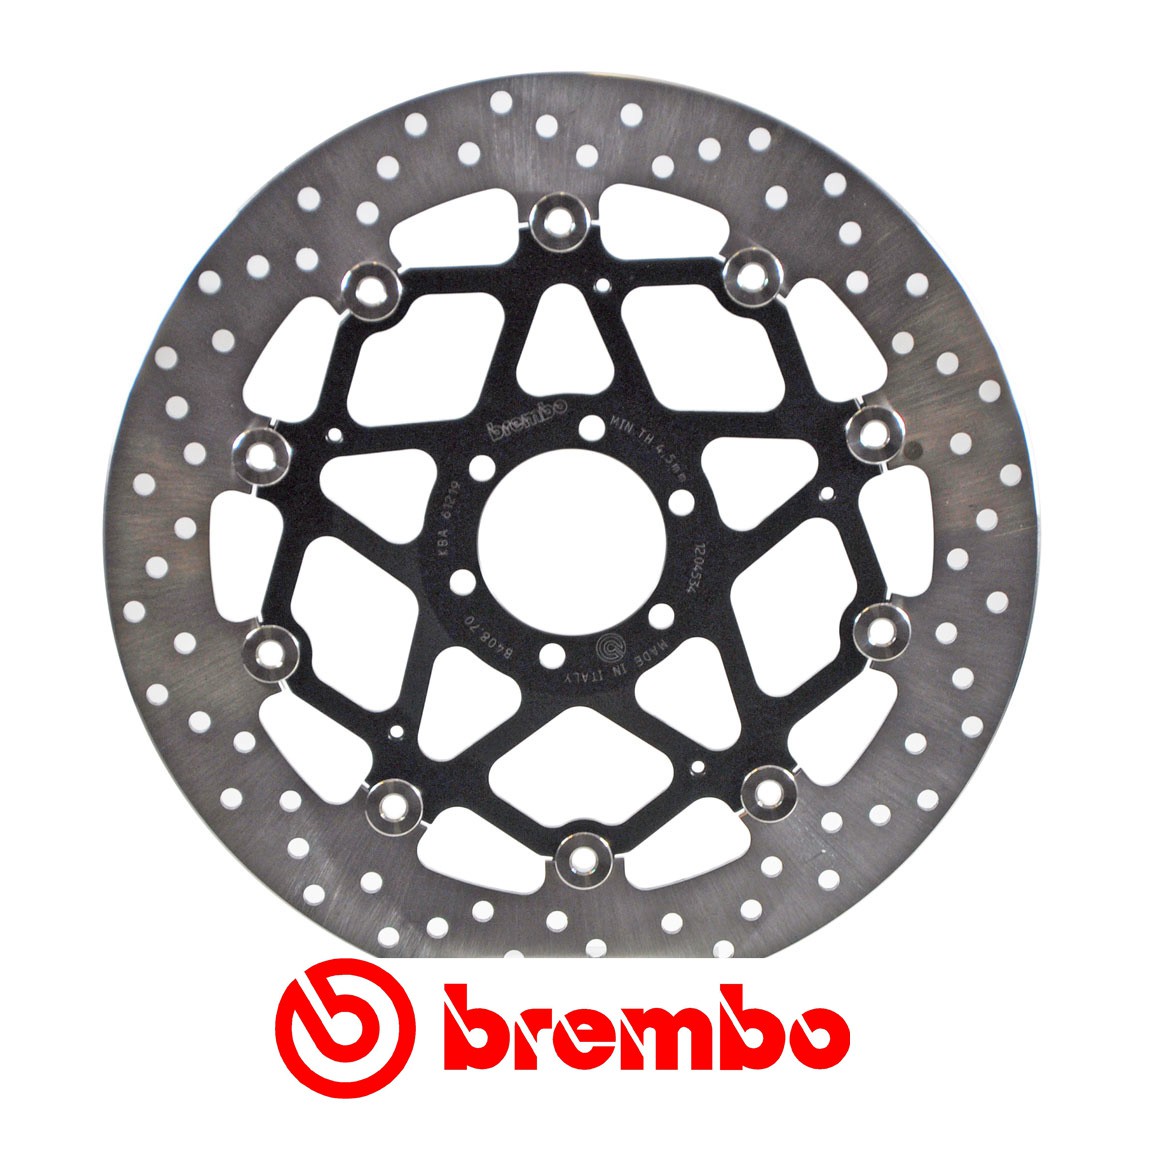 Disque de frein avant Brembo pour 1130 TNT (04-12) 1130 TRE K (06-11)